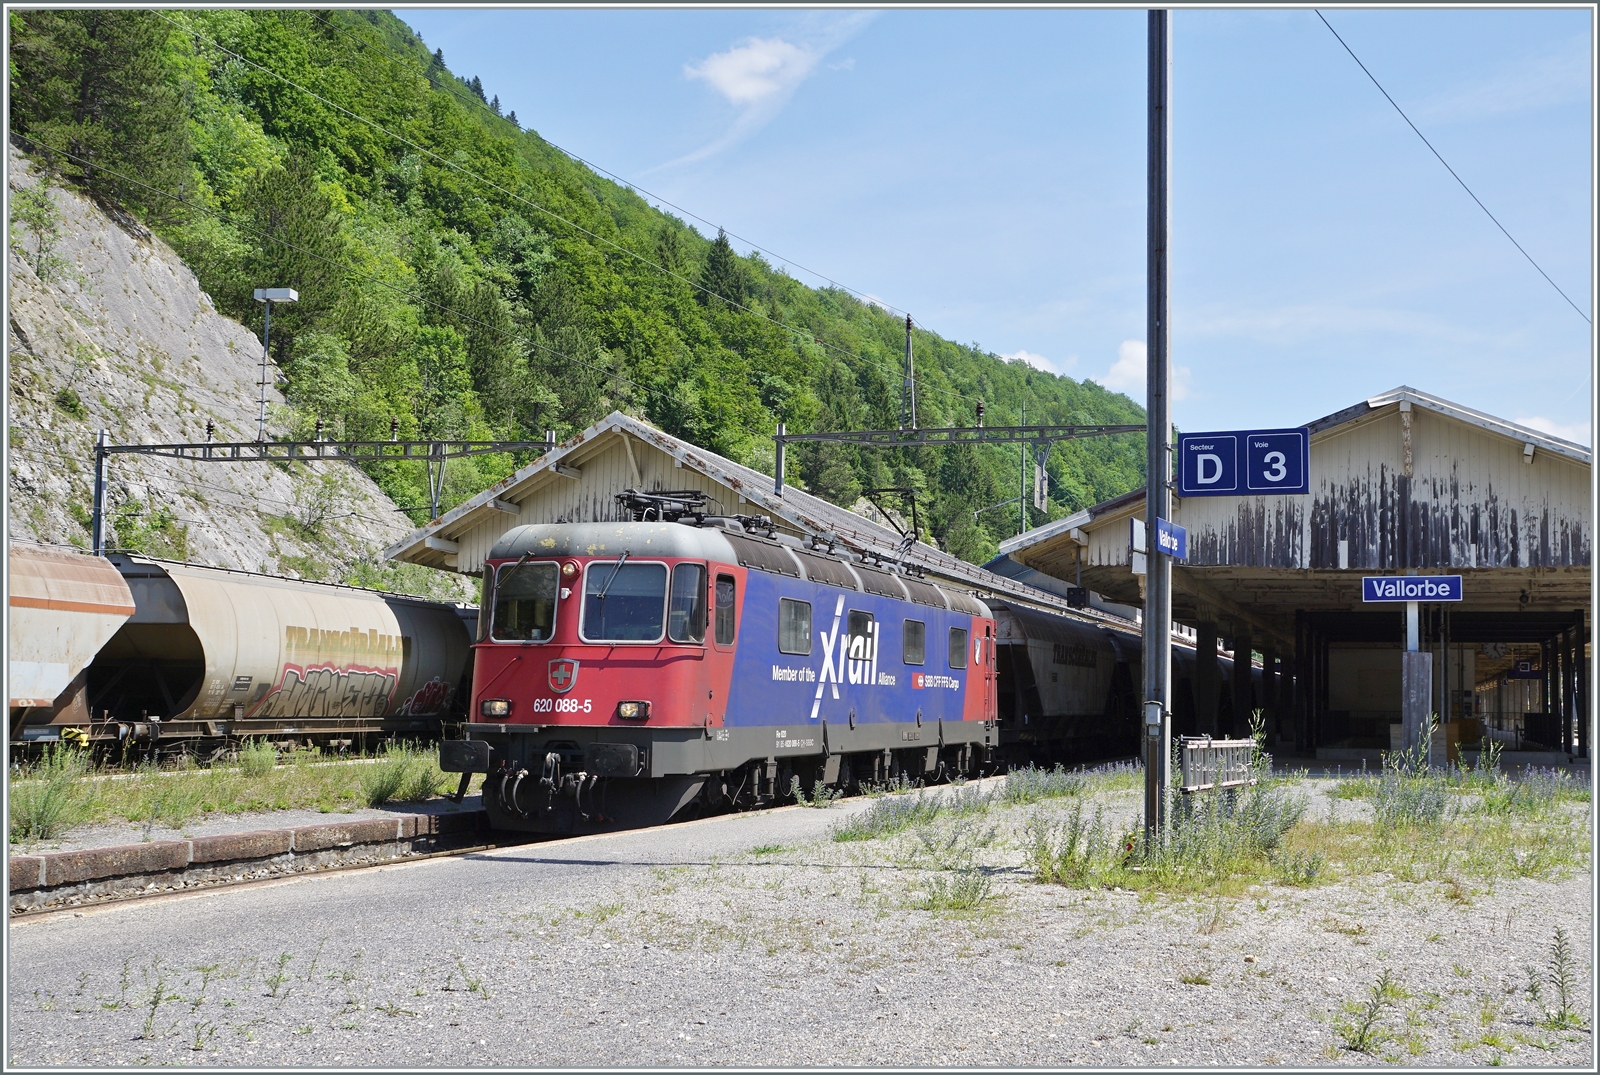 Die SBB Re 6/6 11688 (Re 620 088-5)  Linthal  in der Rail-X Lackierung hatte in Domo II den   Spaghetti -Zug übernommen und ist nun in Vallorbe eingetroffen, wo sie von SNCF Loks abgelöst werden wird. Links im Bild ist der Gegenzug zu erkennen. 

16. Juni 2022